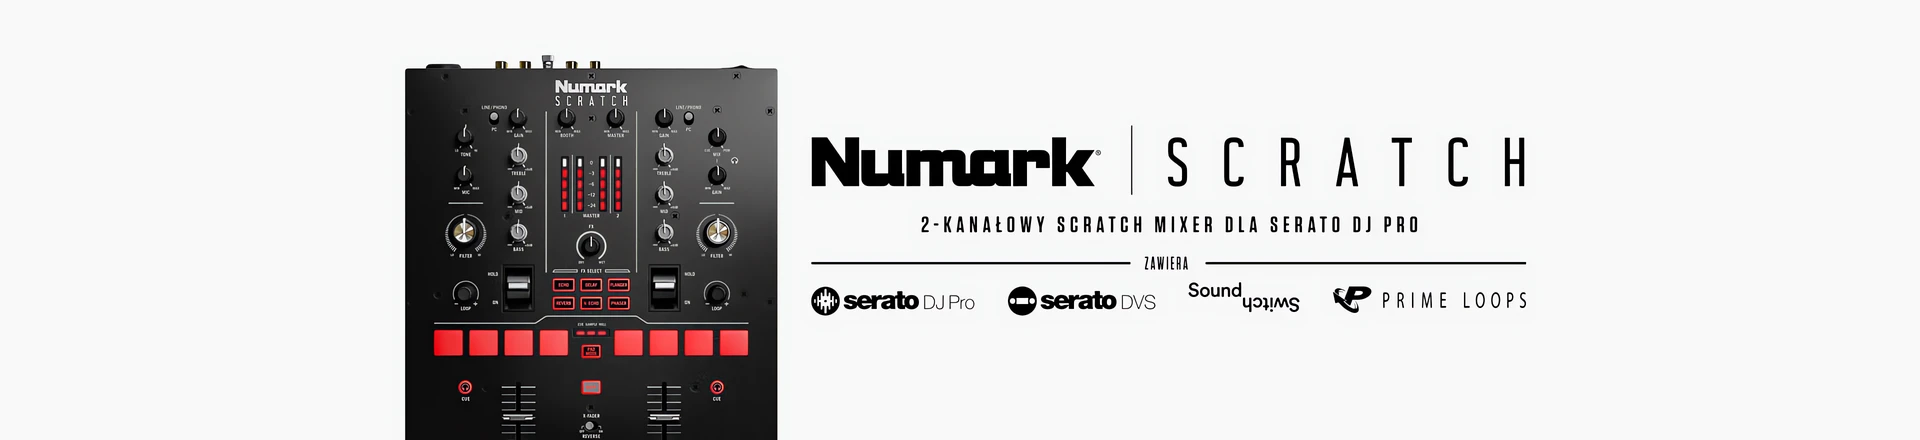 Numark Scratch - Nowy dwukanałowy scratch mikser dla Serato DJ Pro